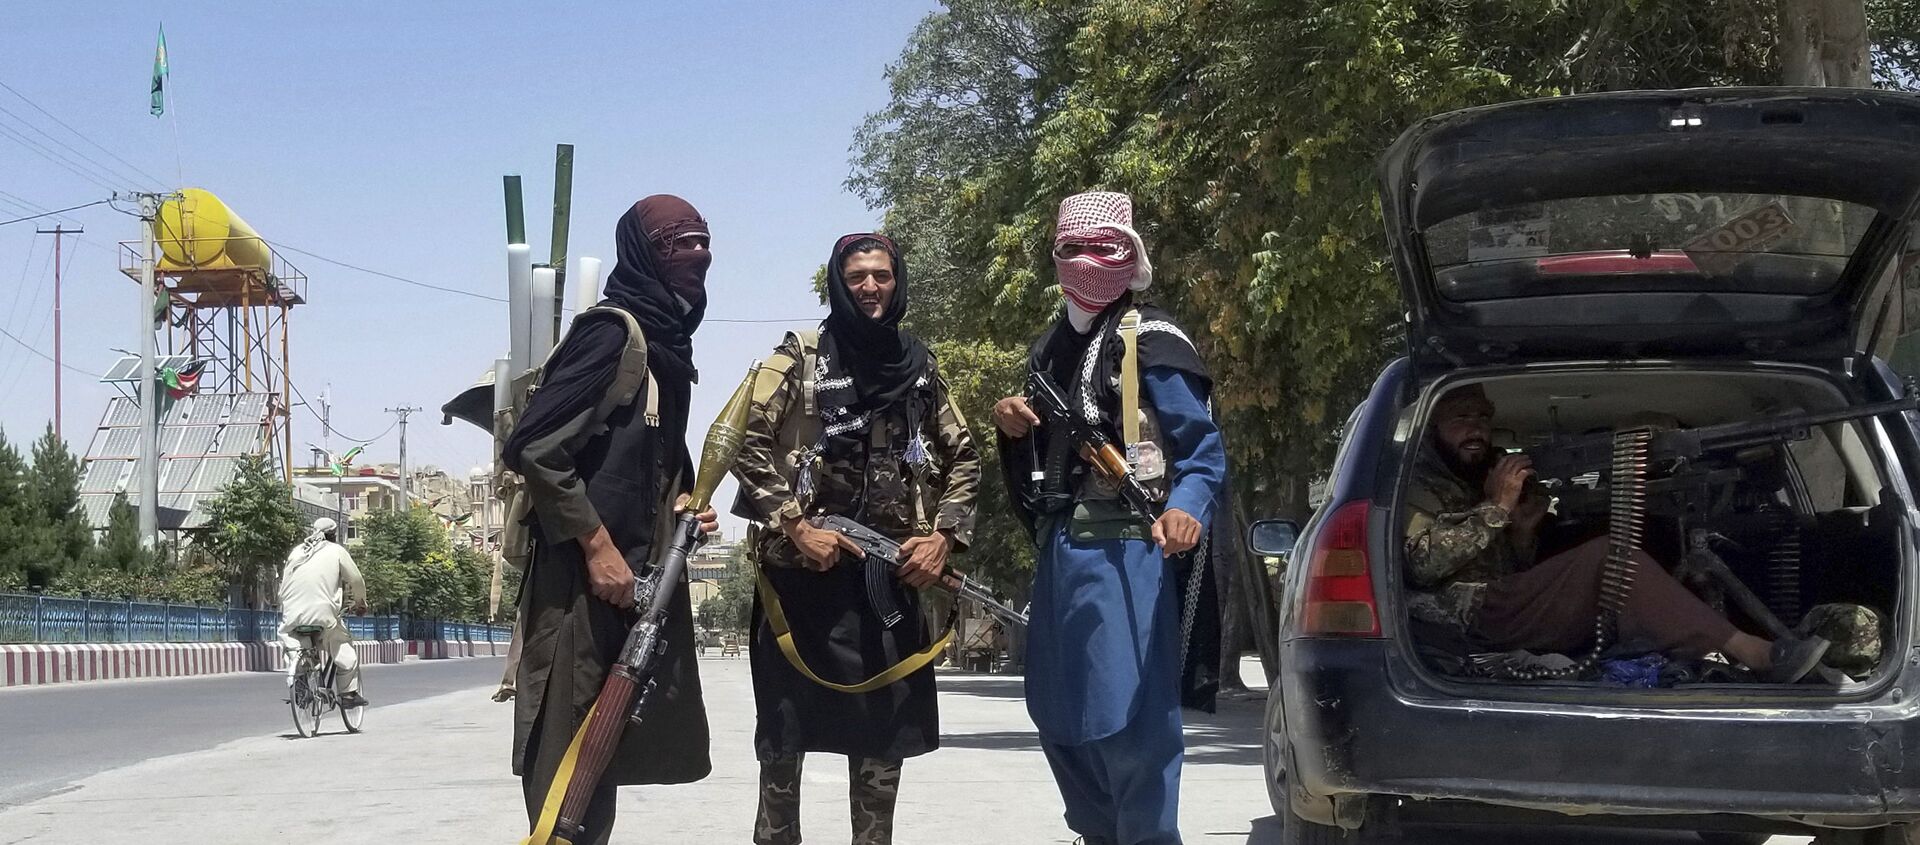 Бойцы Талибана позируют для фото во время патрулирования в городе Газни, к юго-западу от Кабула, Афганистан, в четверг, 12 августа 2021 года. Талибан захватил столицу провинции недалеко от Кабула в четверг, 10-го числа, повстанцы предприняли недельный блиц по всему Афганистану, когда США и НАТО готовятся полностью уйти из страны после десятилетий войны. - Sputnik Абхазия, 1920, 13.08.2021